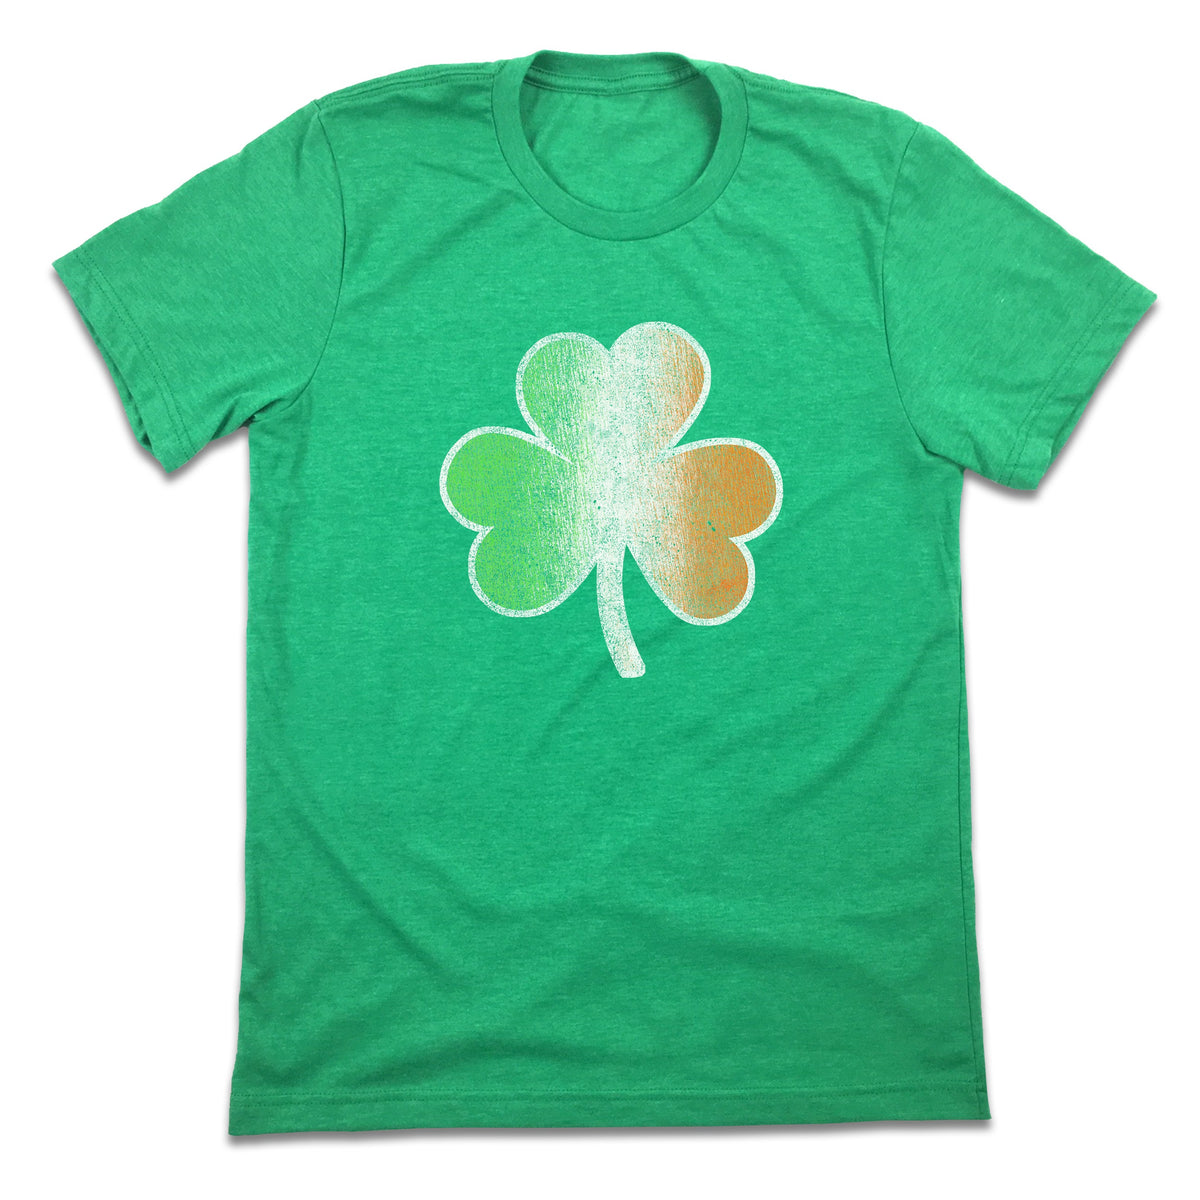 Irish Flag Shamrock T-shirt